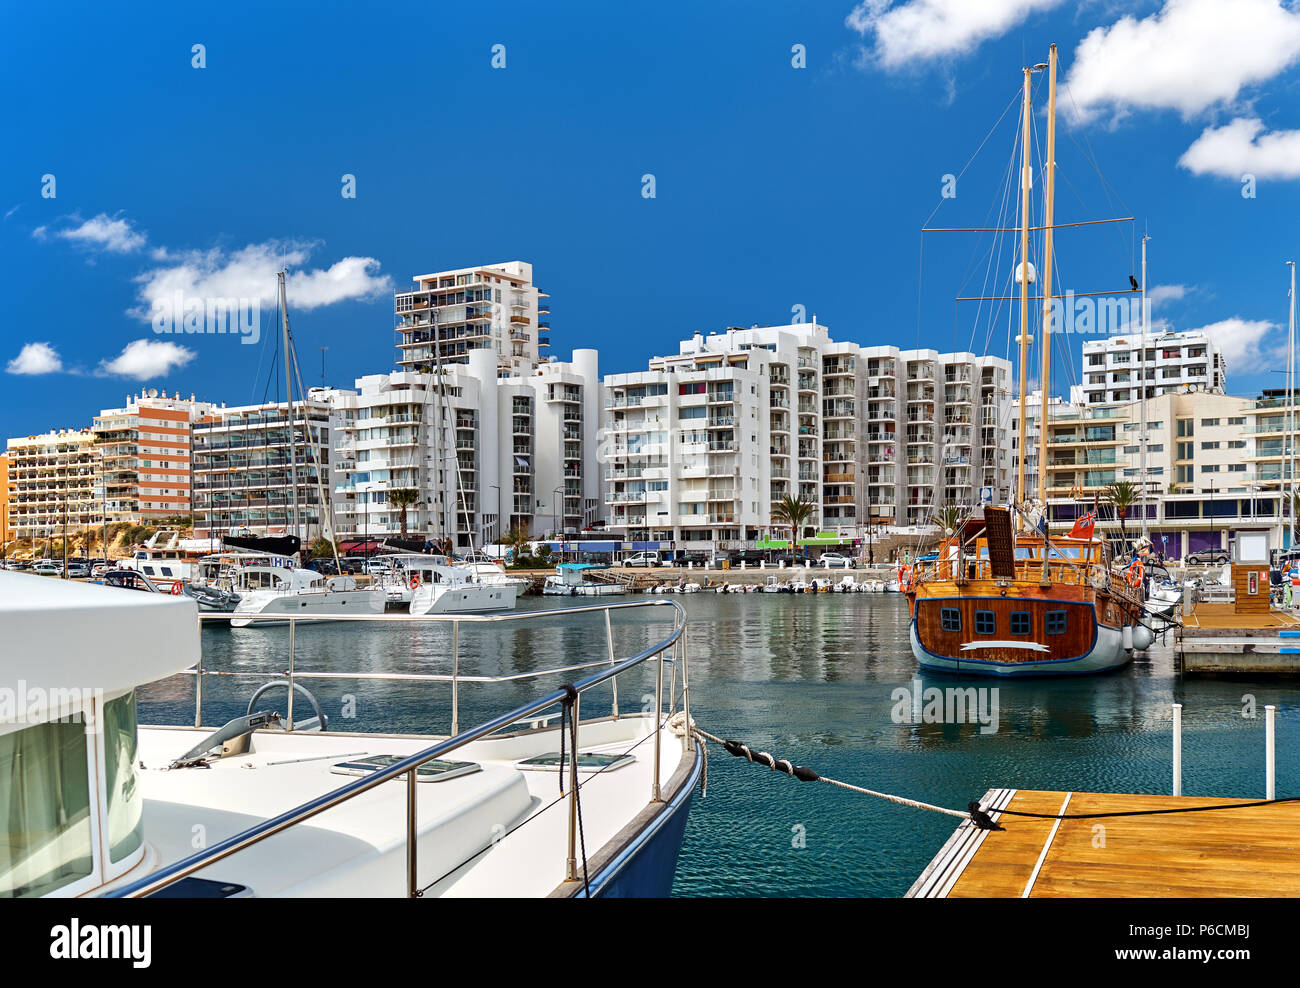 Hafen von Playa de Palma. San Antonio (Sant Antoni) ist die zweitgrößte Stadt auf Ibiza. Balearen. Spanien Stockfoto